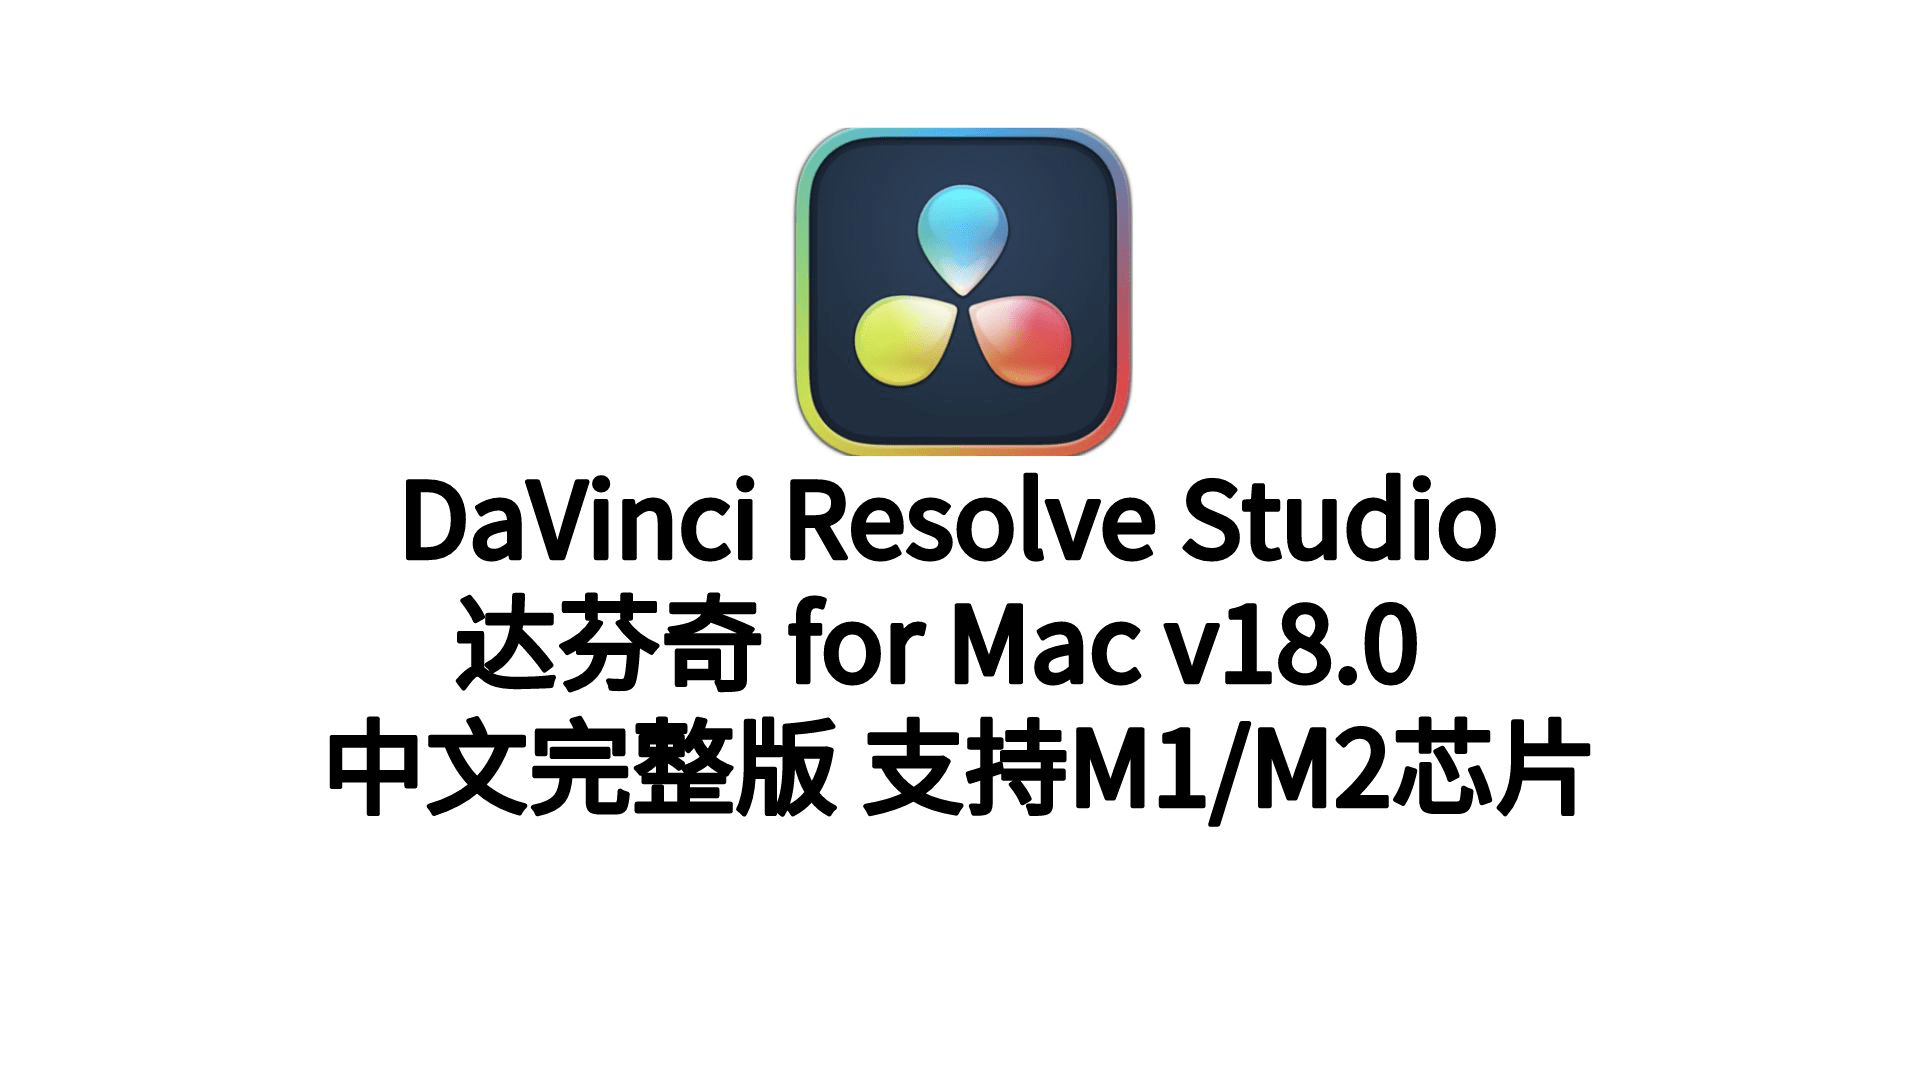 老板专业调音器下载苹果版:DaVinci Resolve Studio18formac(达芬奇中文破解版)下载安装支持M1/M2以及Win-第1张图片-太平洋在线下载